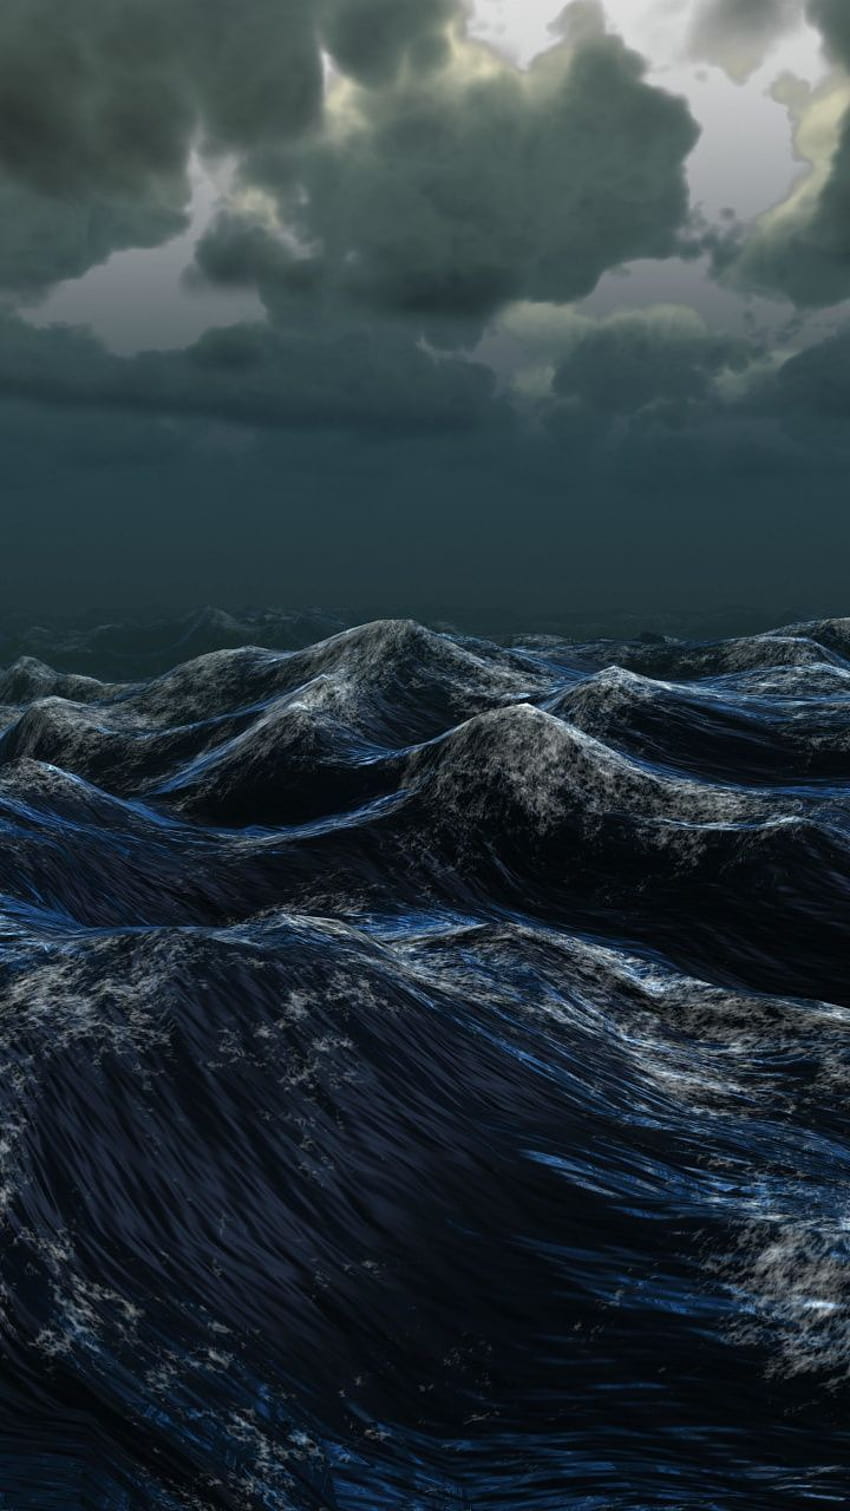 Naturaleza, océano, mar, cuerpo de agua, oscuridad, tormenta, 720x1280, noche tormentosa en el teléfono del mar fondo de pantalla del teléfono